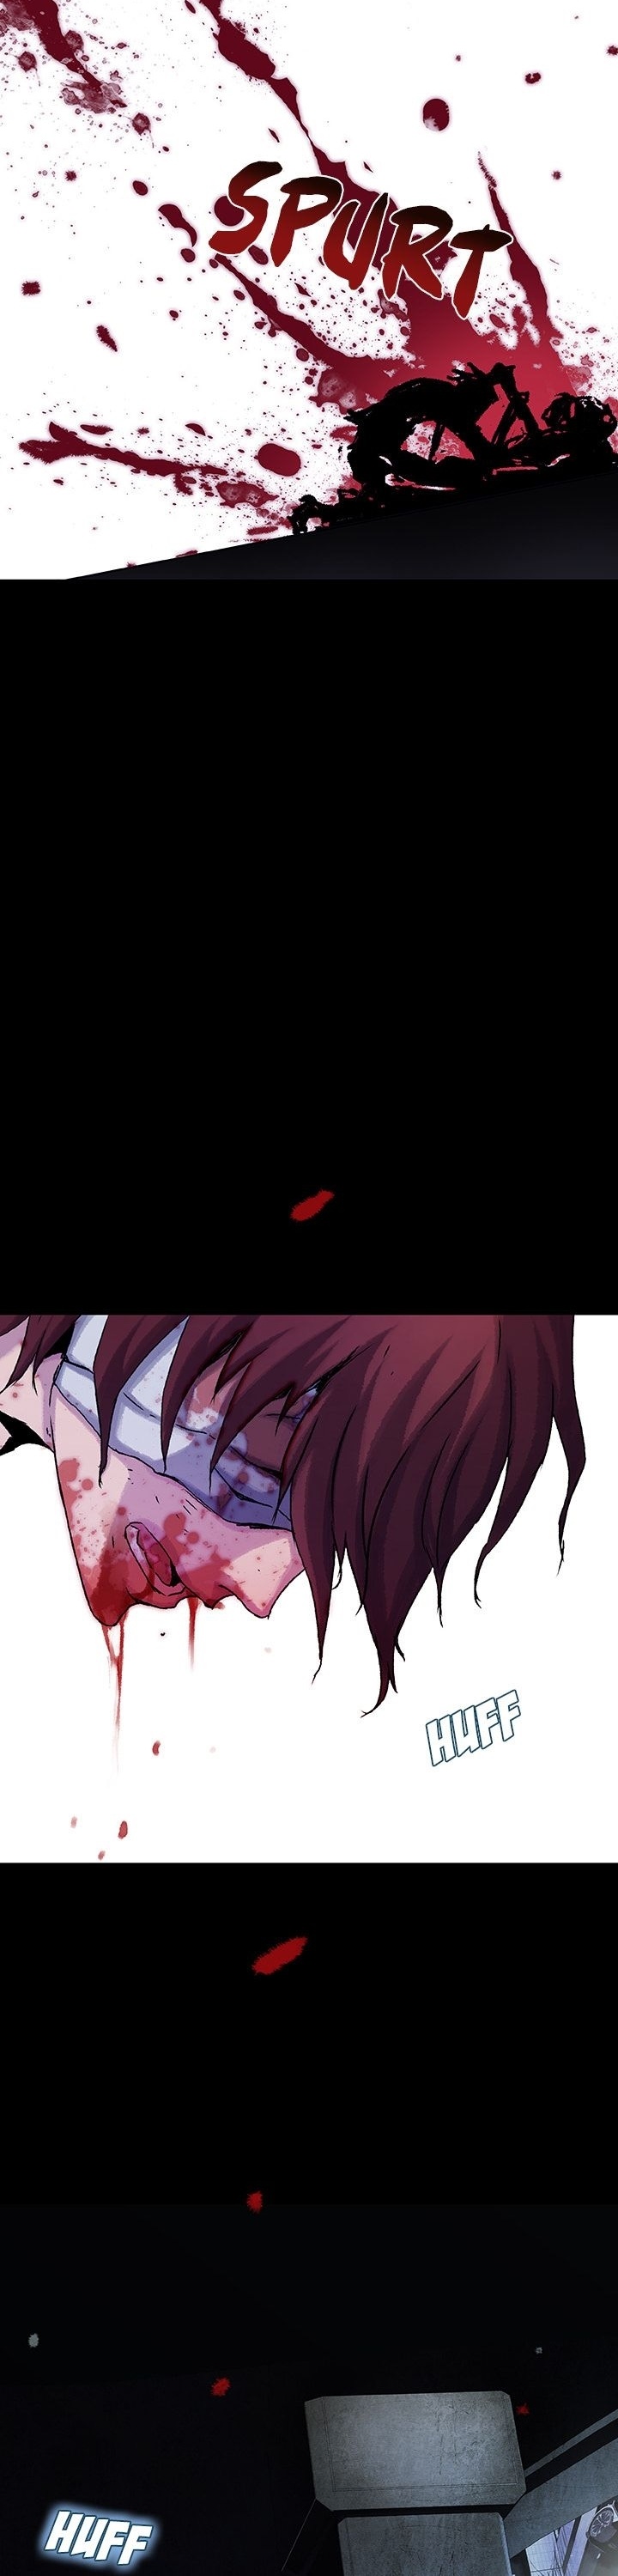 Blood Blade image